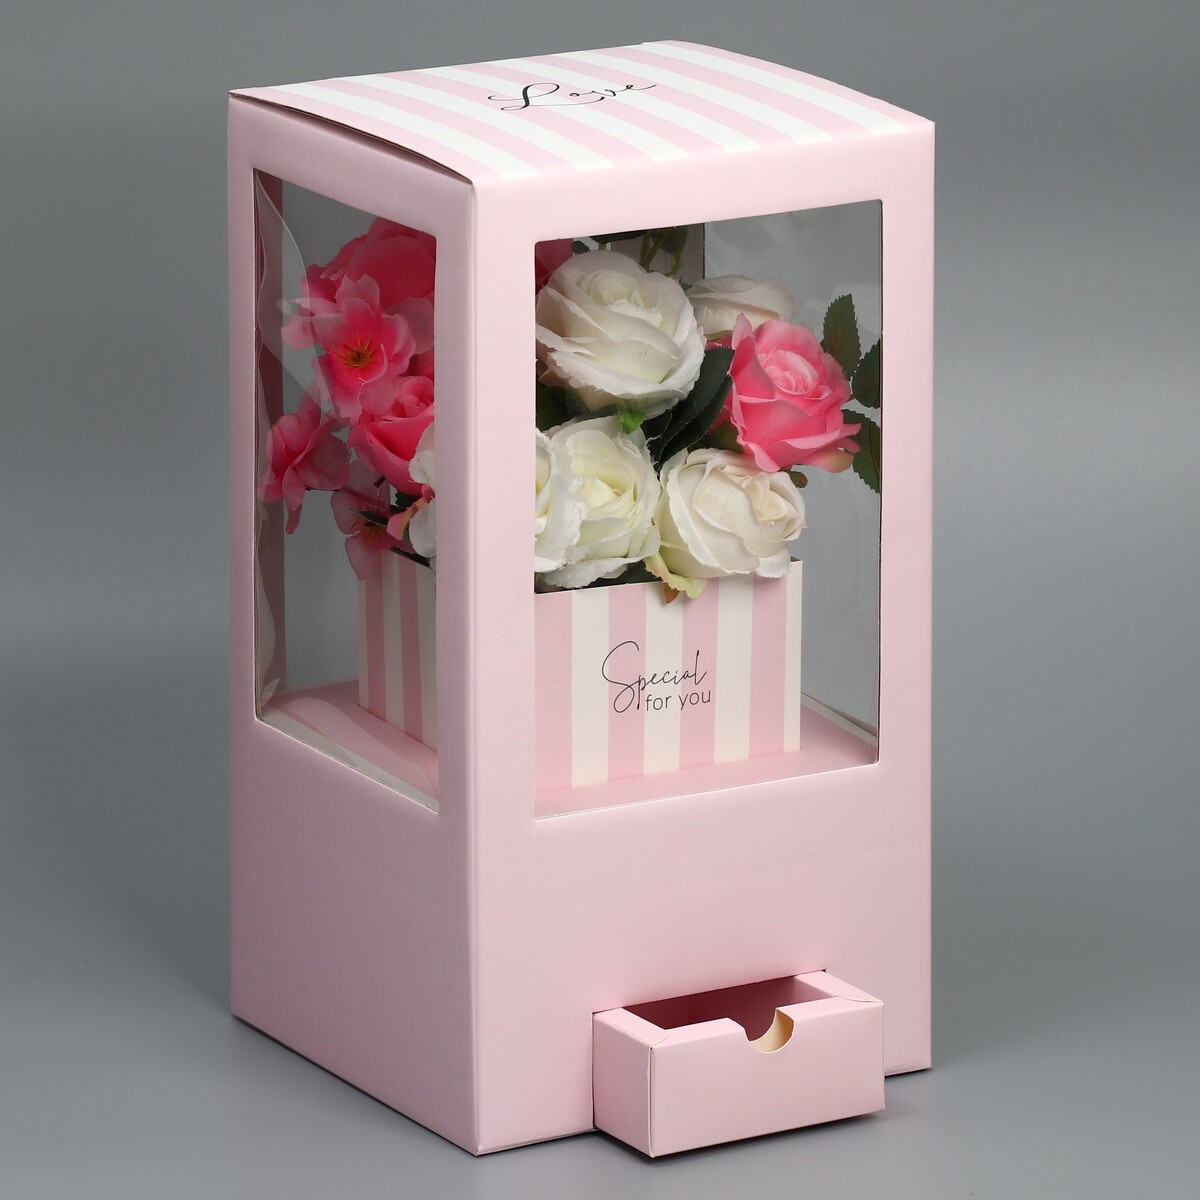 Коробка подарочная для цветов с вазой из мгк складная, упаковка, коробка для ов с вазой и pvc окнами складная сиреневый 16 х 23 х 16 см